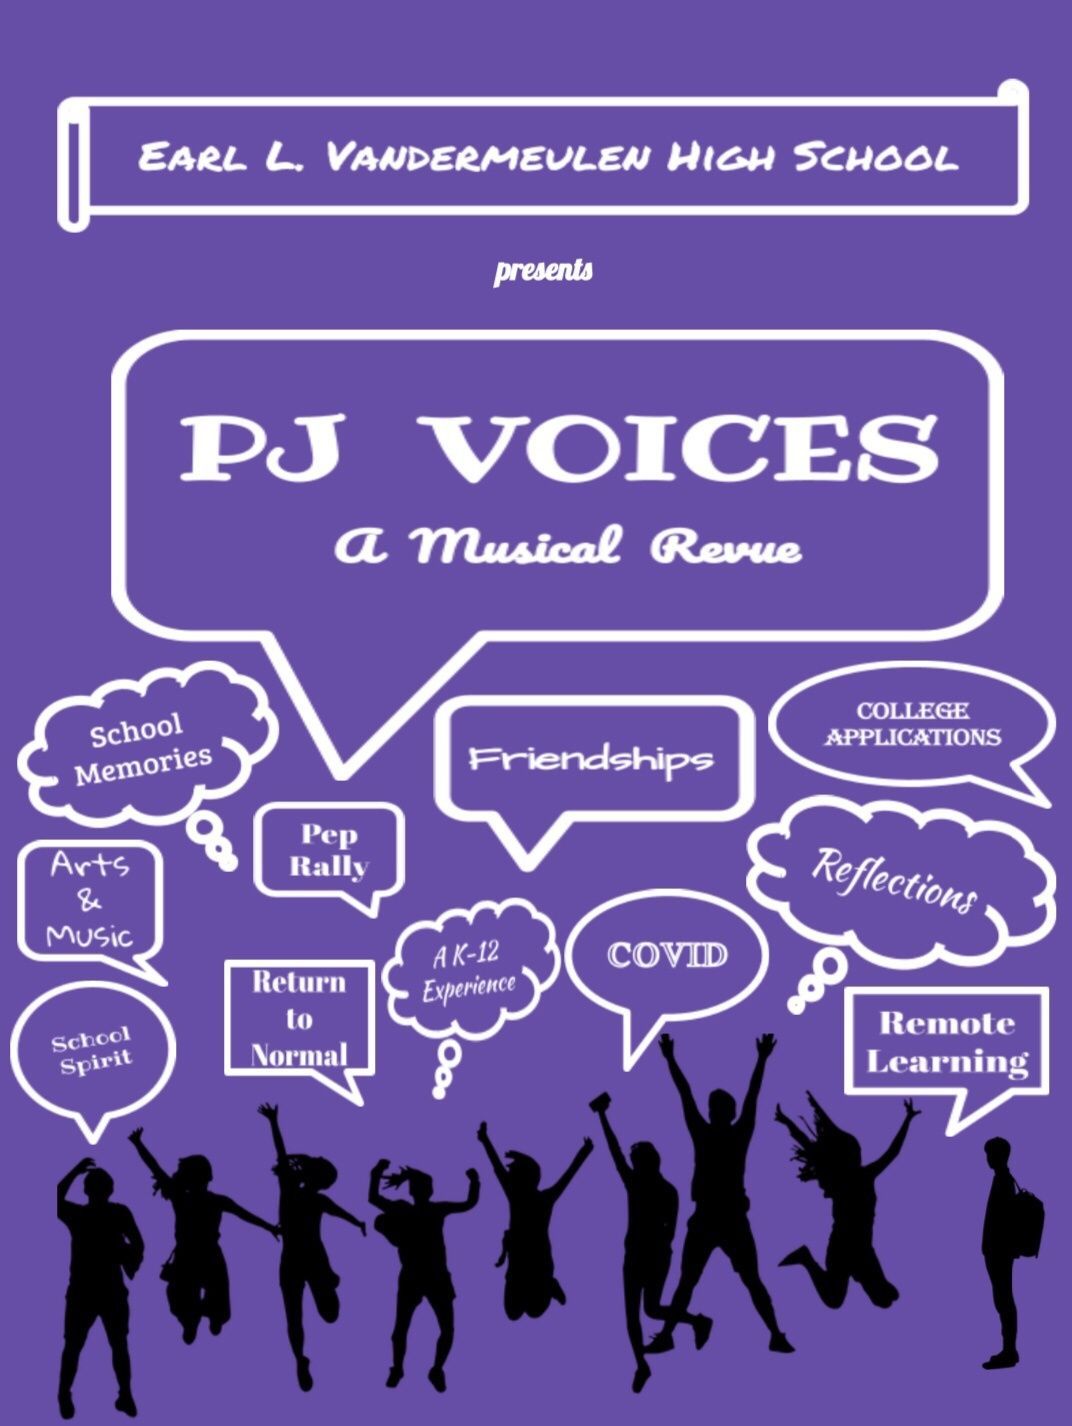 “PJ Voices: A Musical Revue”